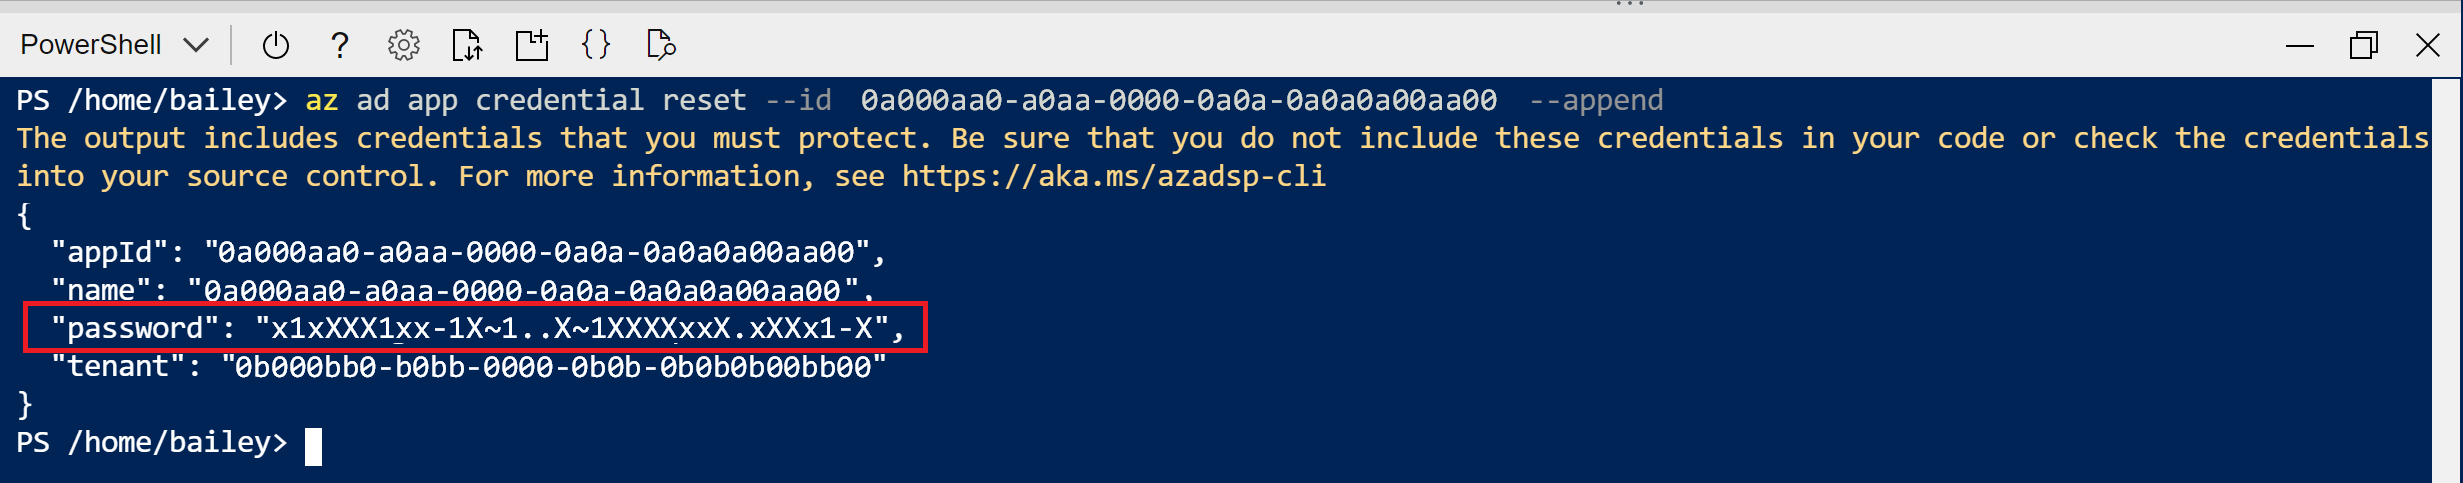 Captura de pantalla de la salida de Cloud Shell del comando de creación del registro de la aplicación. El valor de password está resaltado.